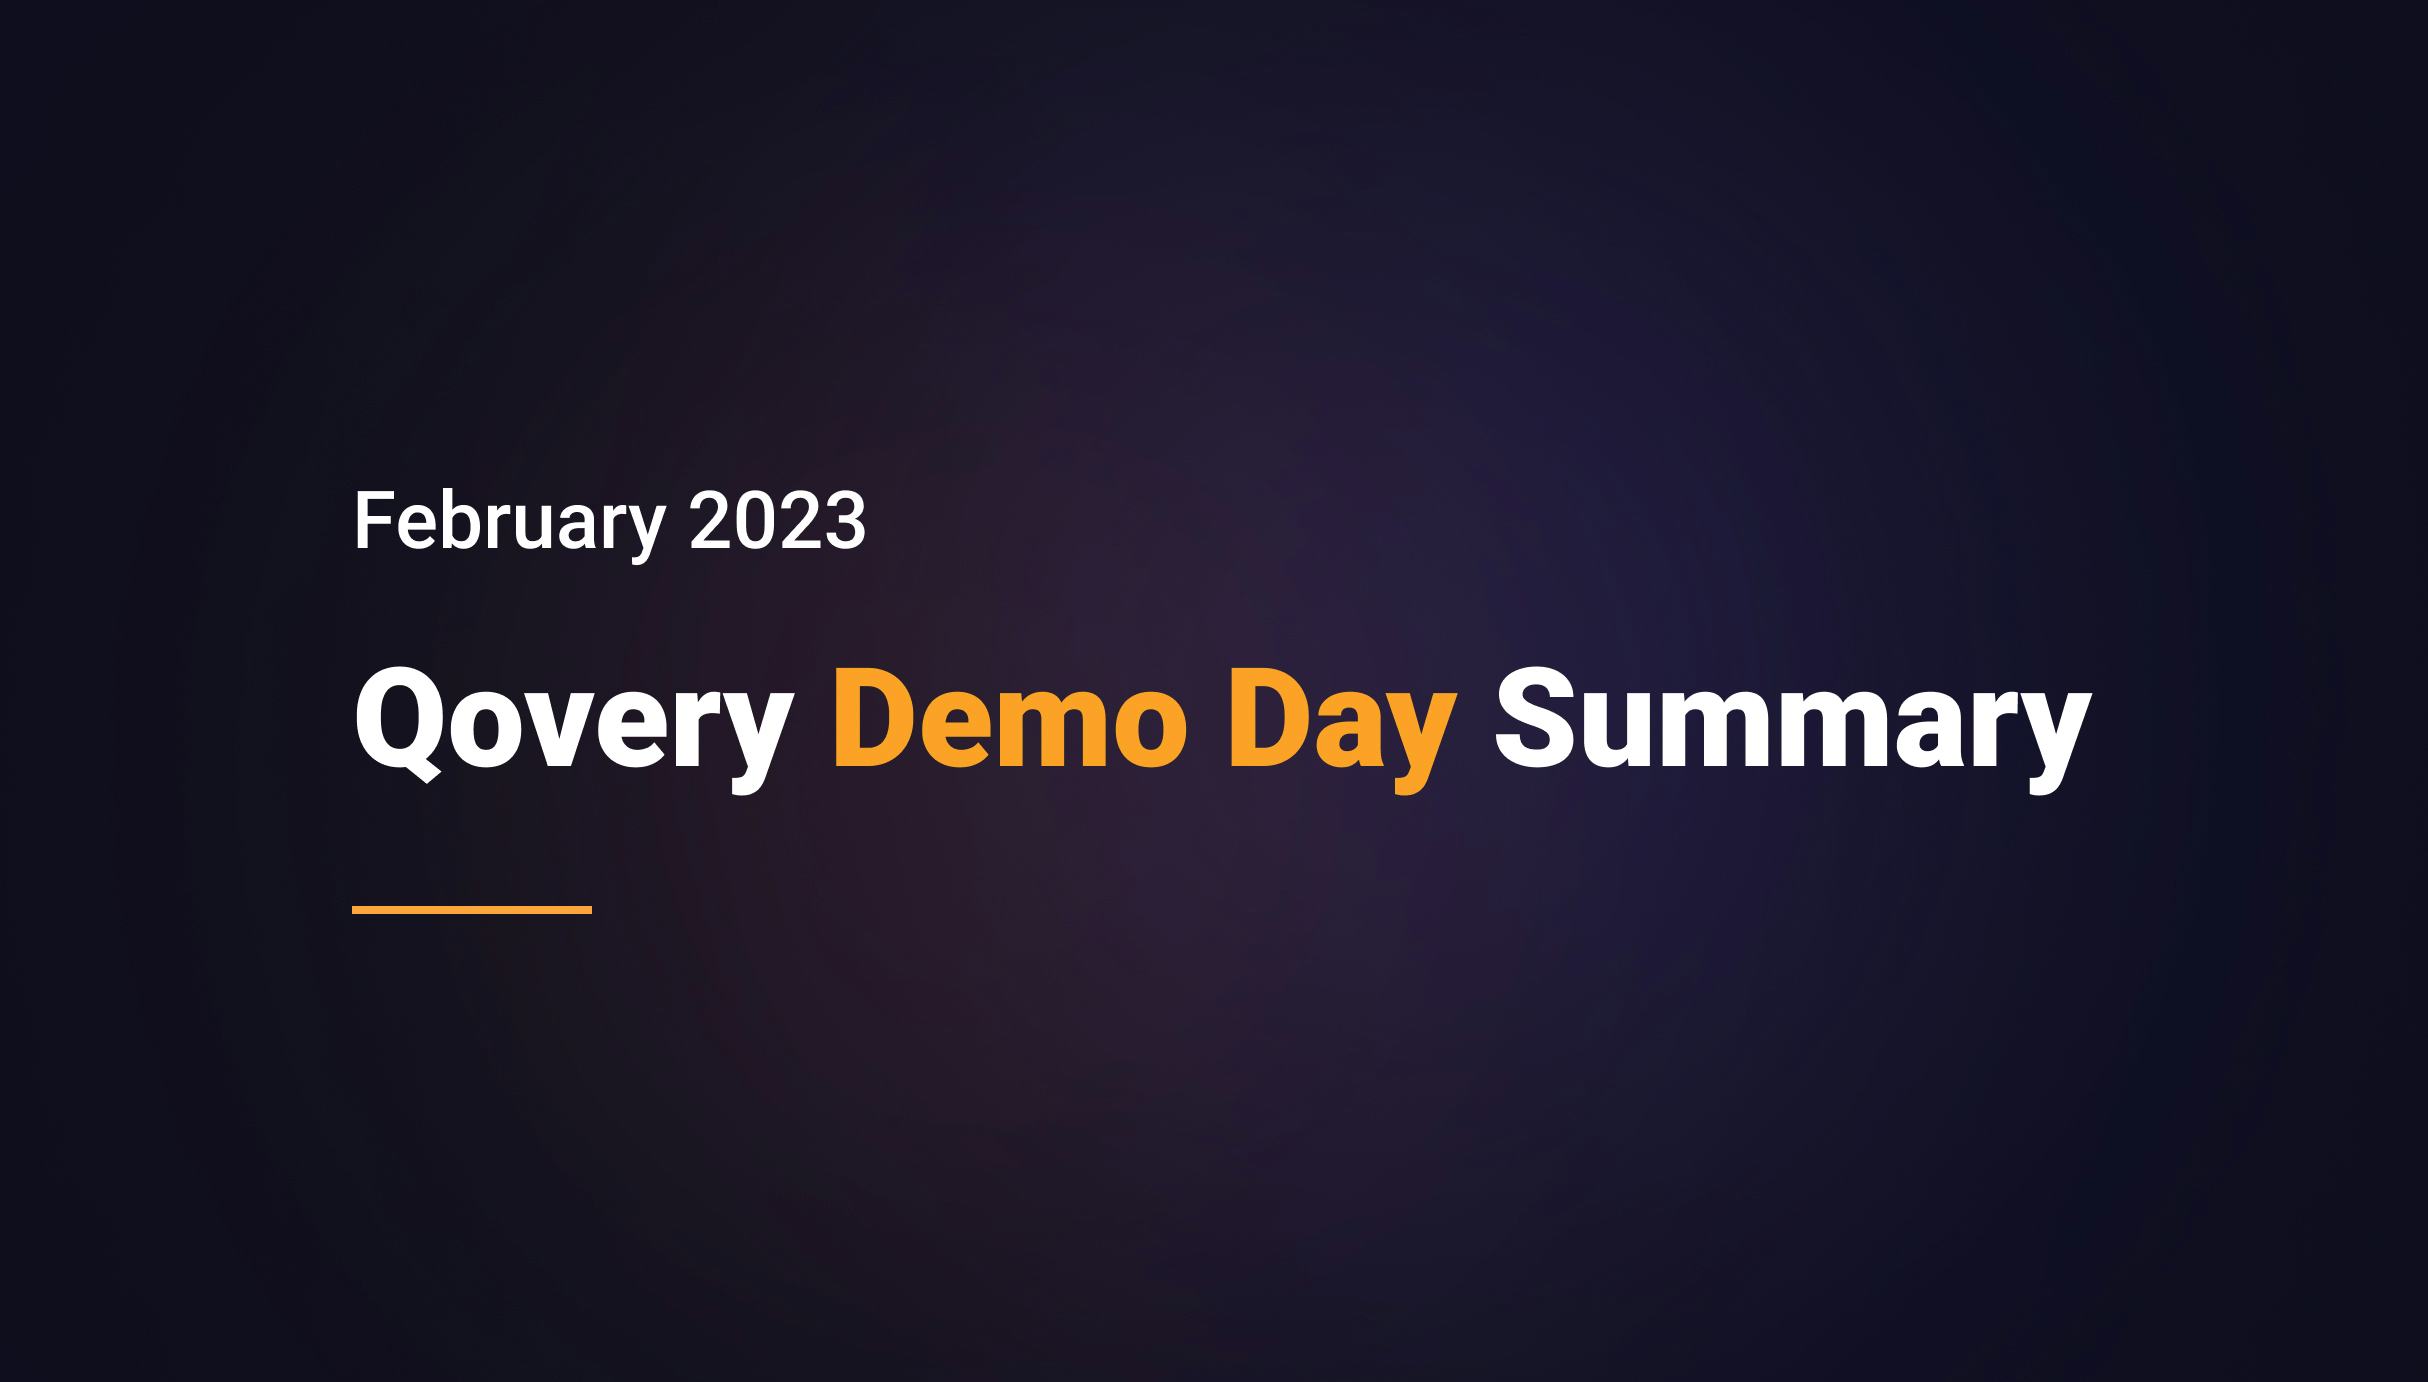 Qovery Demo Day Summary - February 2023